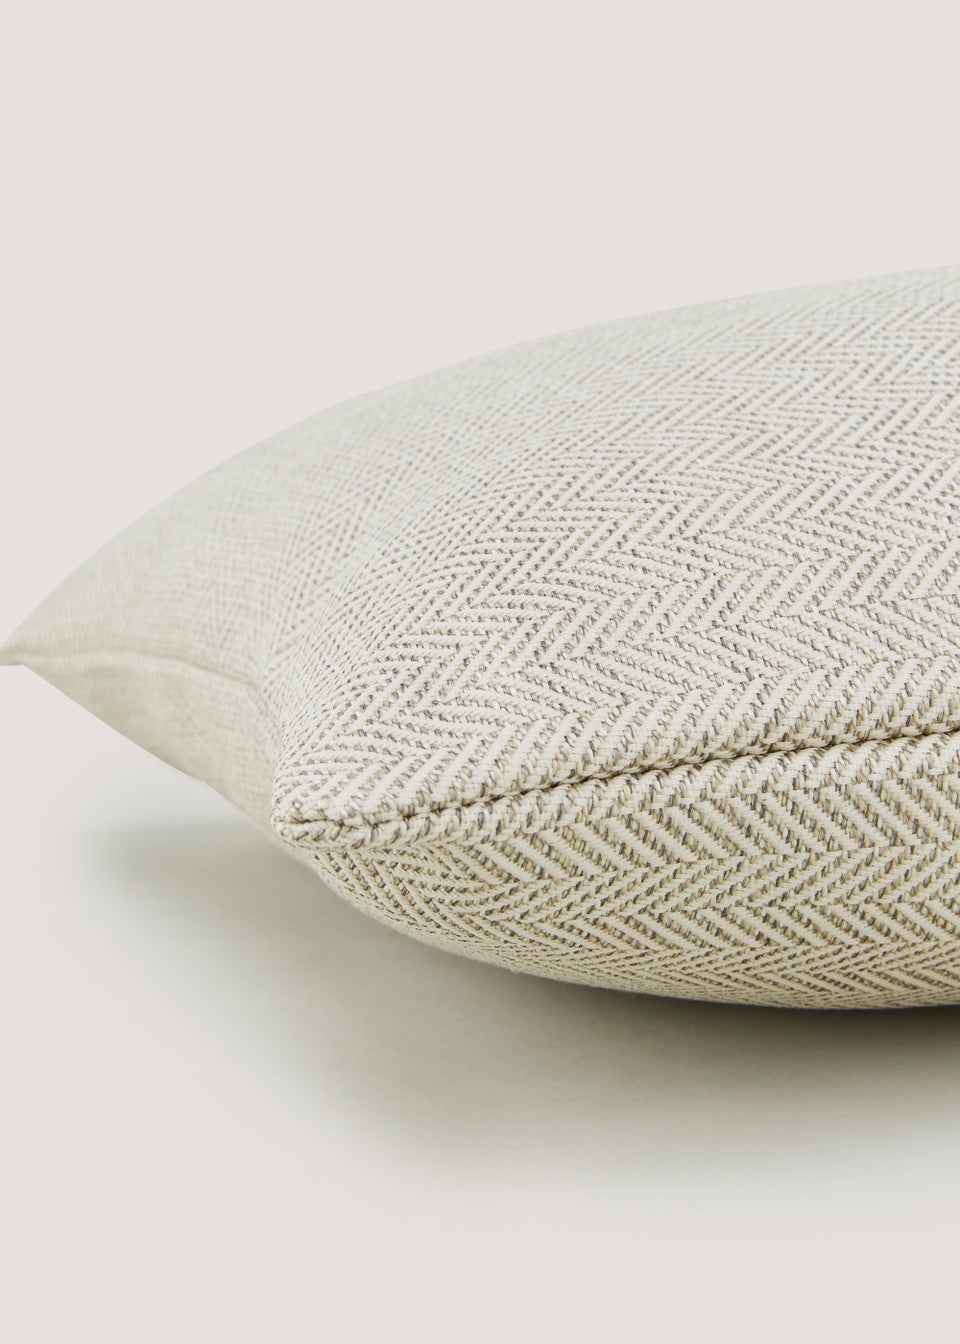 Cream Textured Cushion (43cm x 43cm)